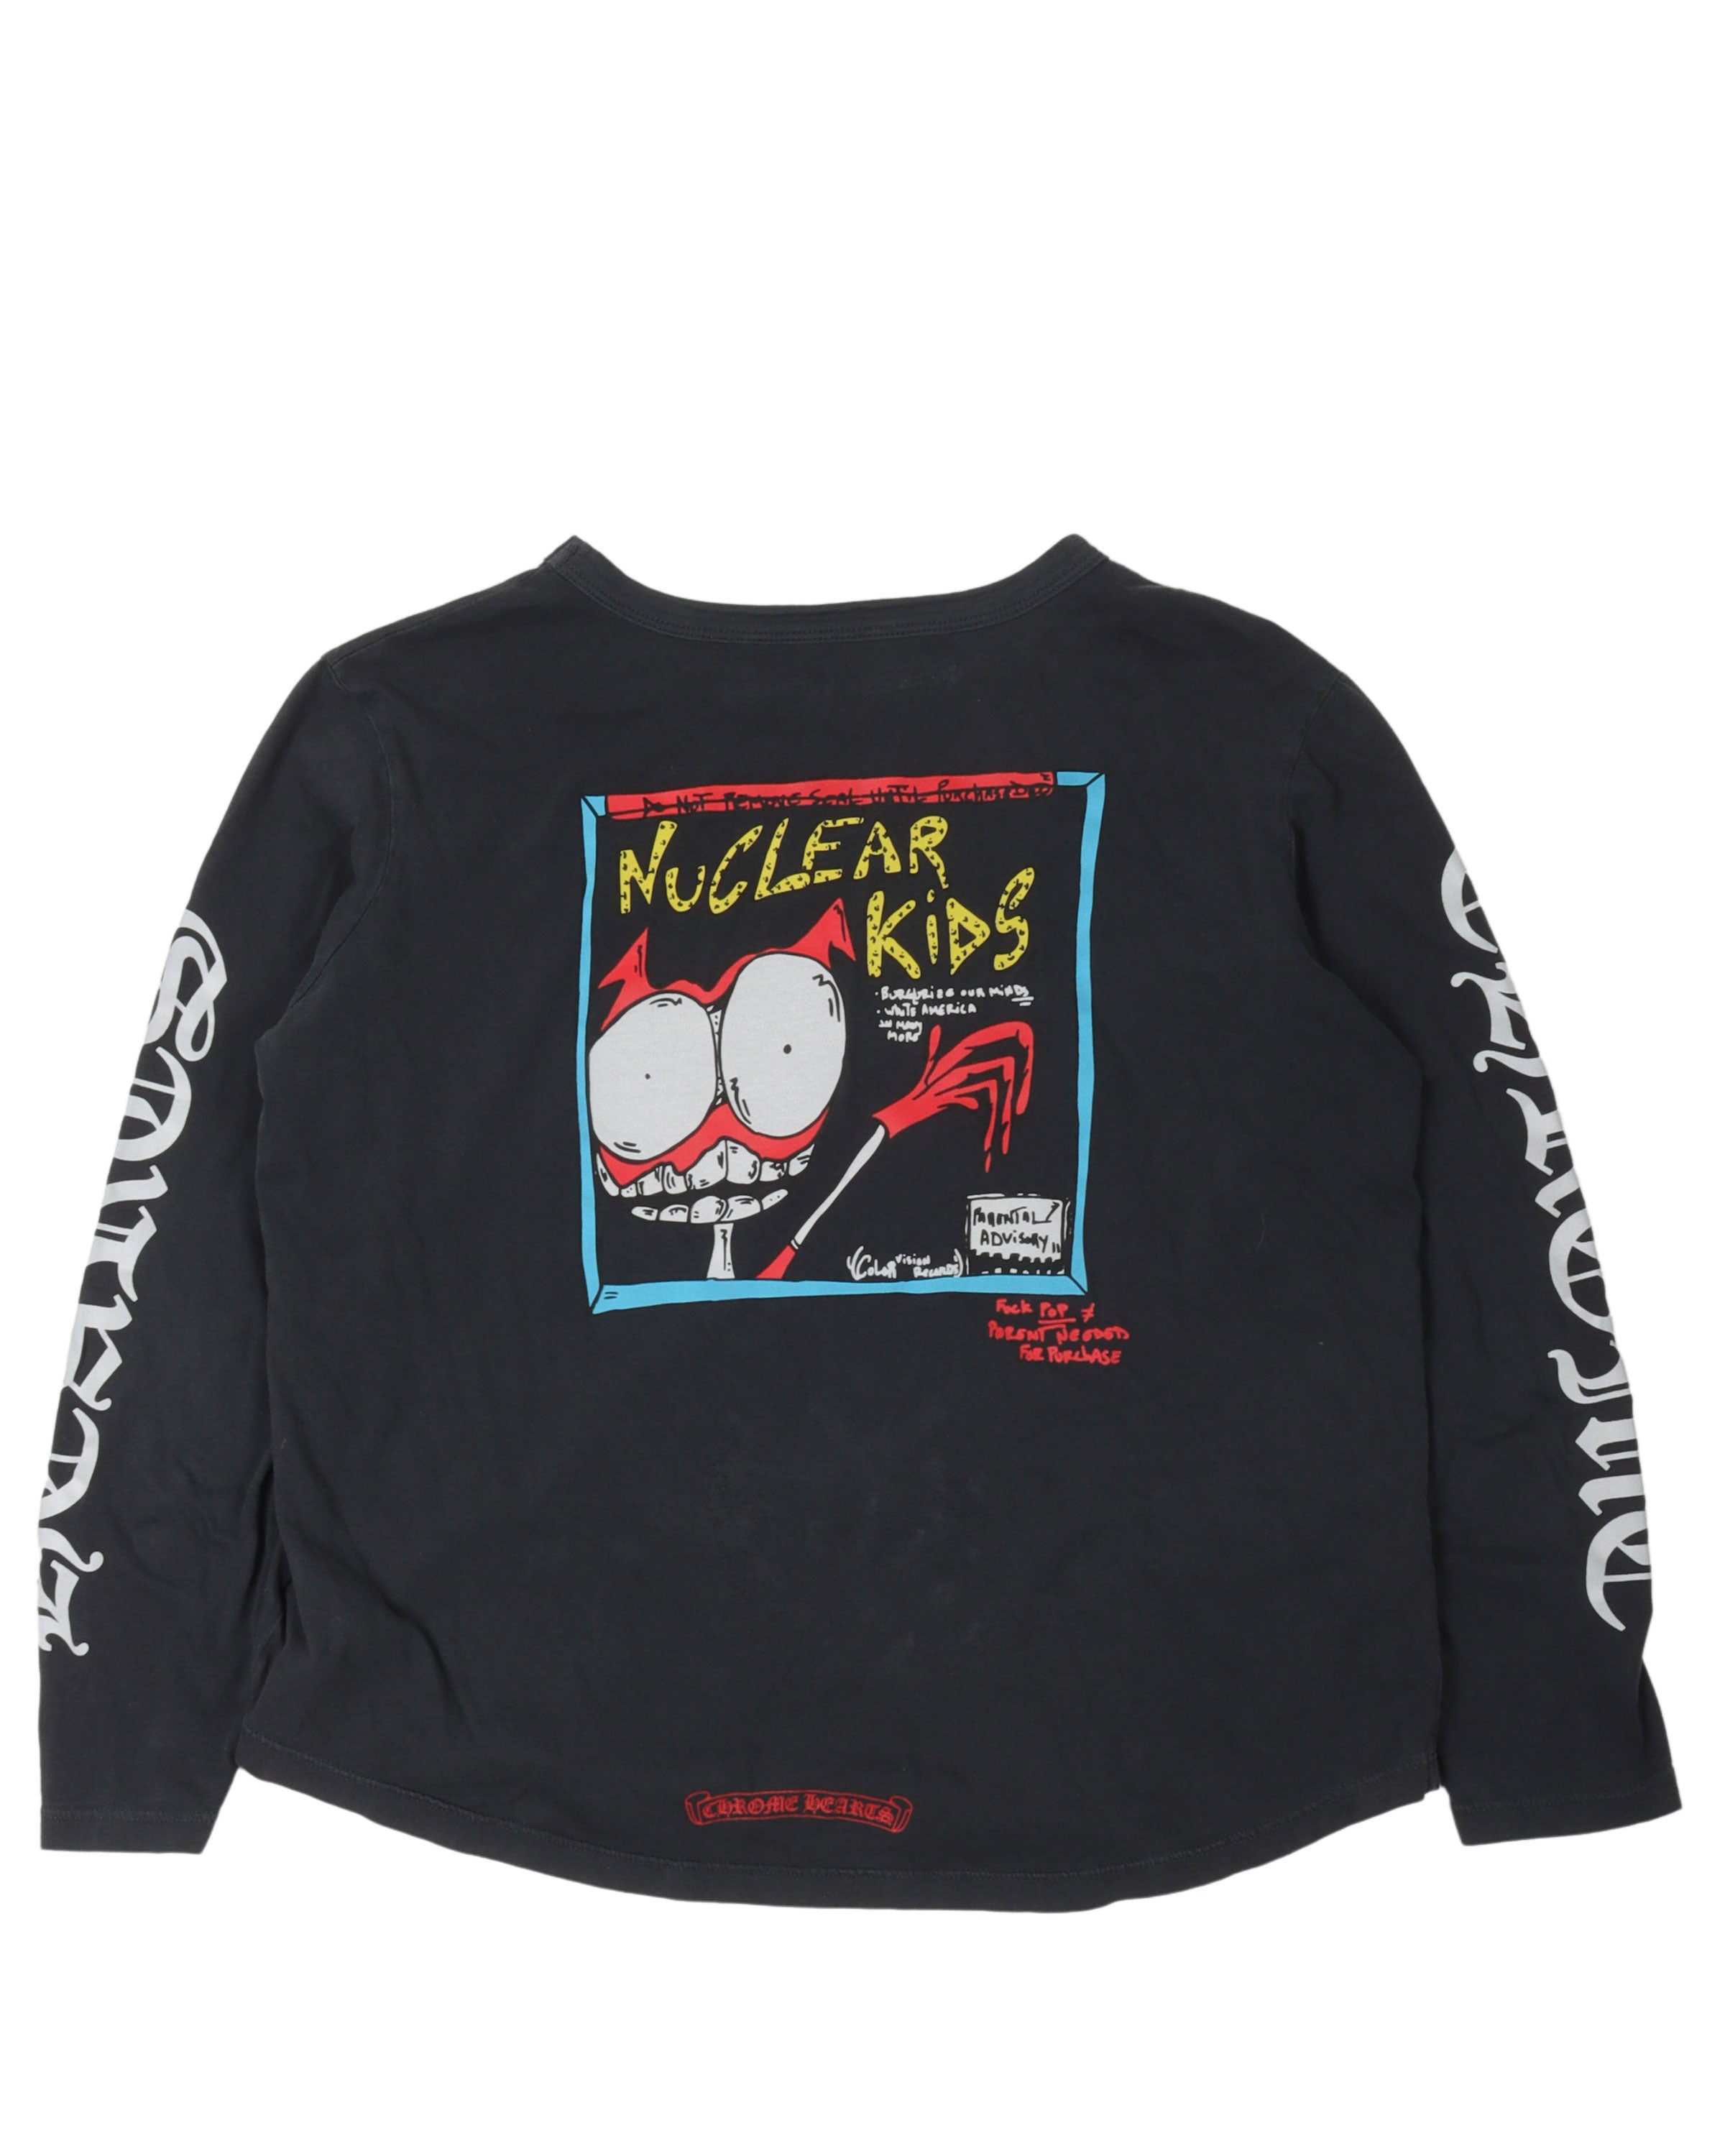 Matty Boy "Nuclear Kids" Long-Sleeve T-Shirt